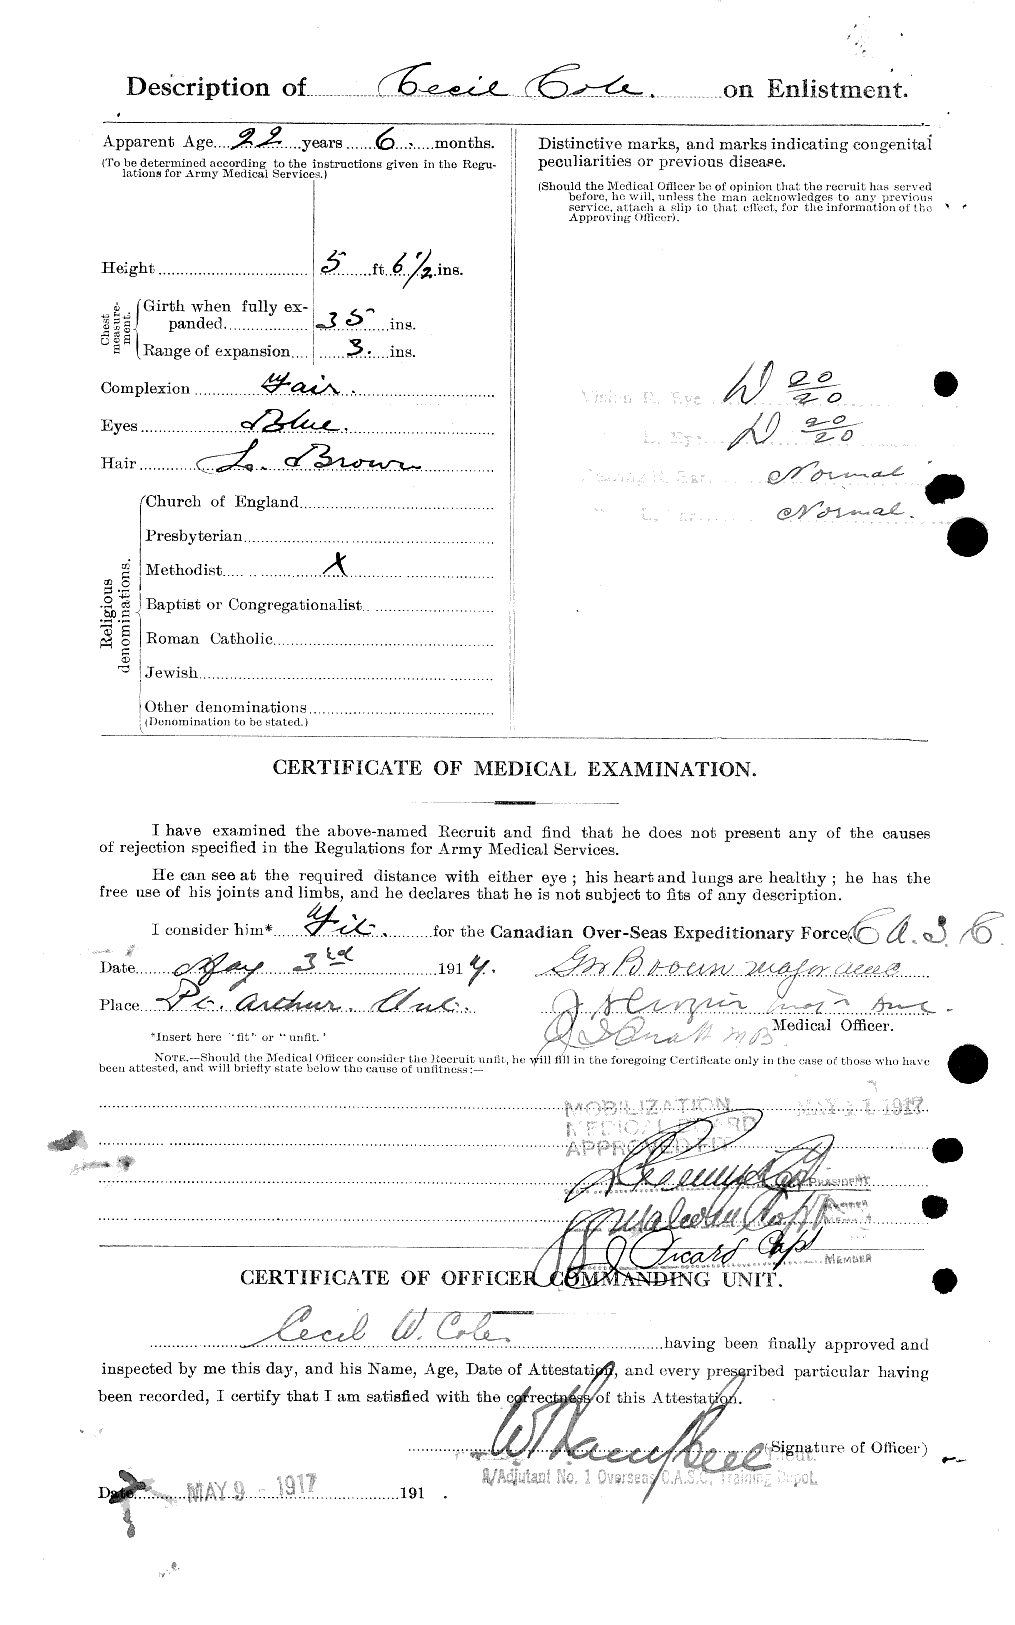 Dossiers du Personnel de la Première Guerre mondiale - CEC 027628b